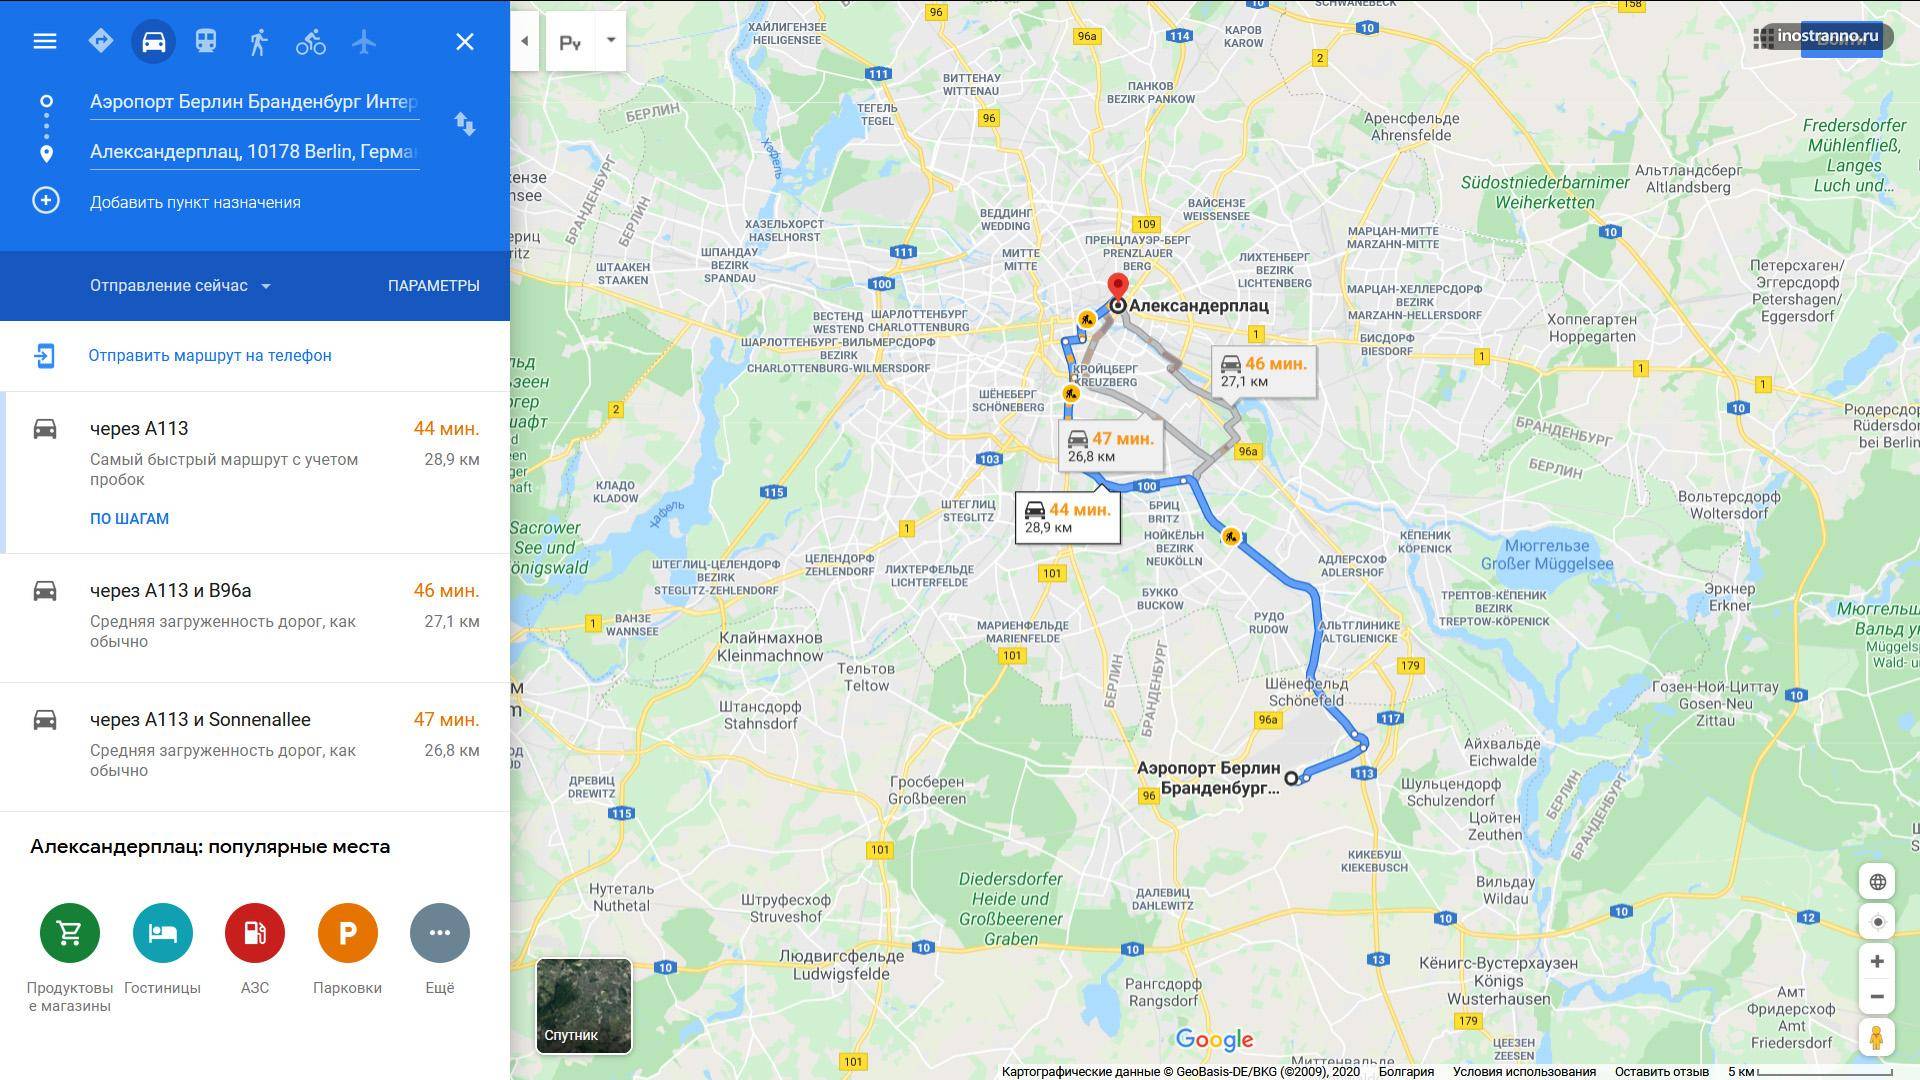 Как добраться из парижа в берлин: поезд, автобус, машина. расстояние, цены на билеты и расписание 2021 на туристер.ру